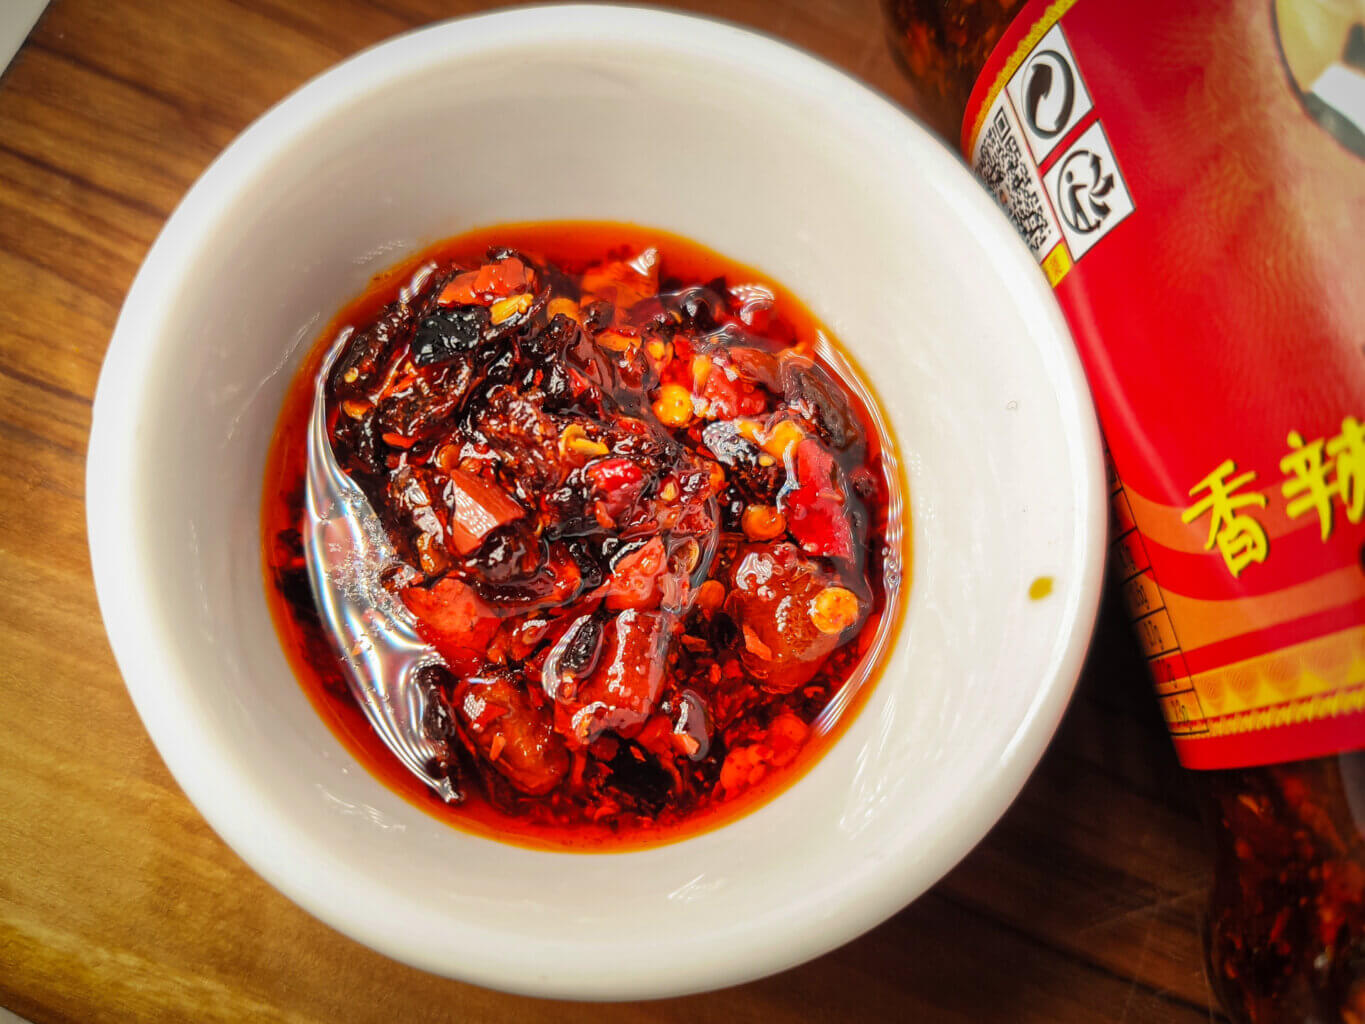 eatfire.de - Laoganma crispy chili in oil Chilisauce